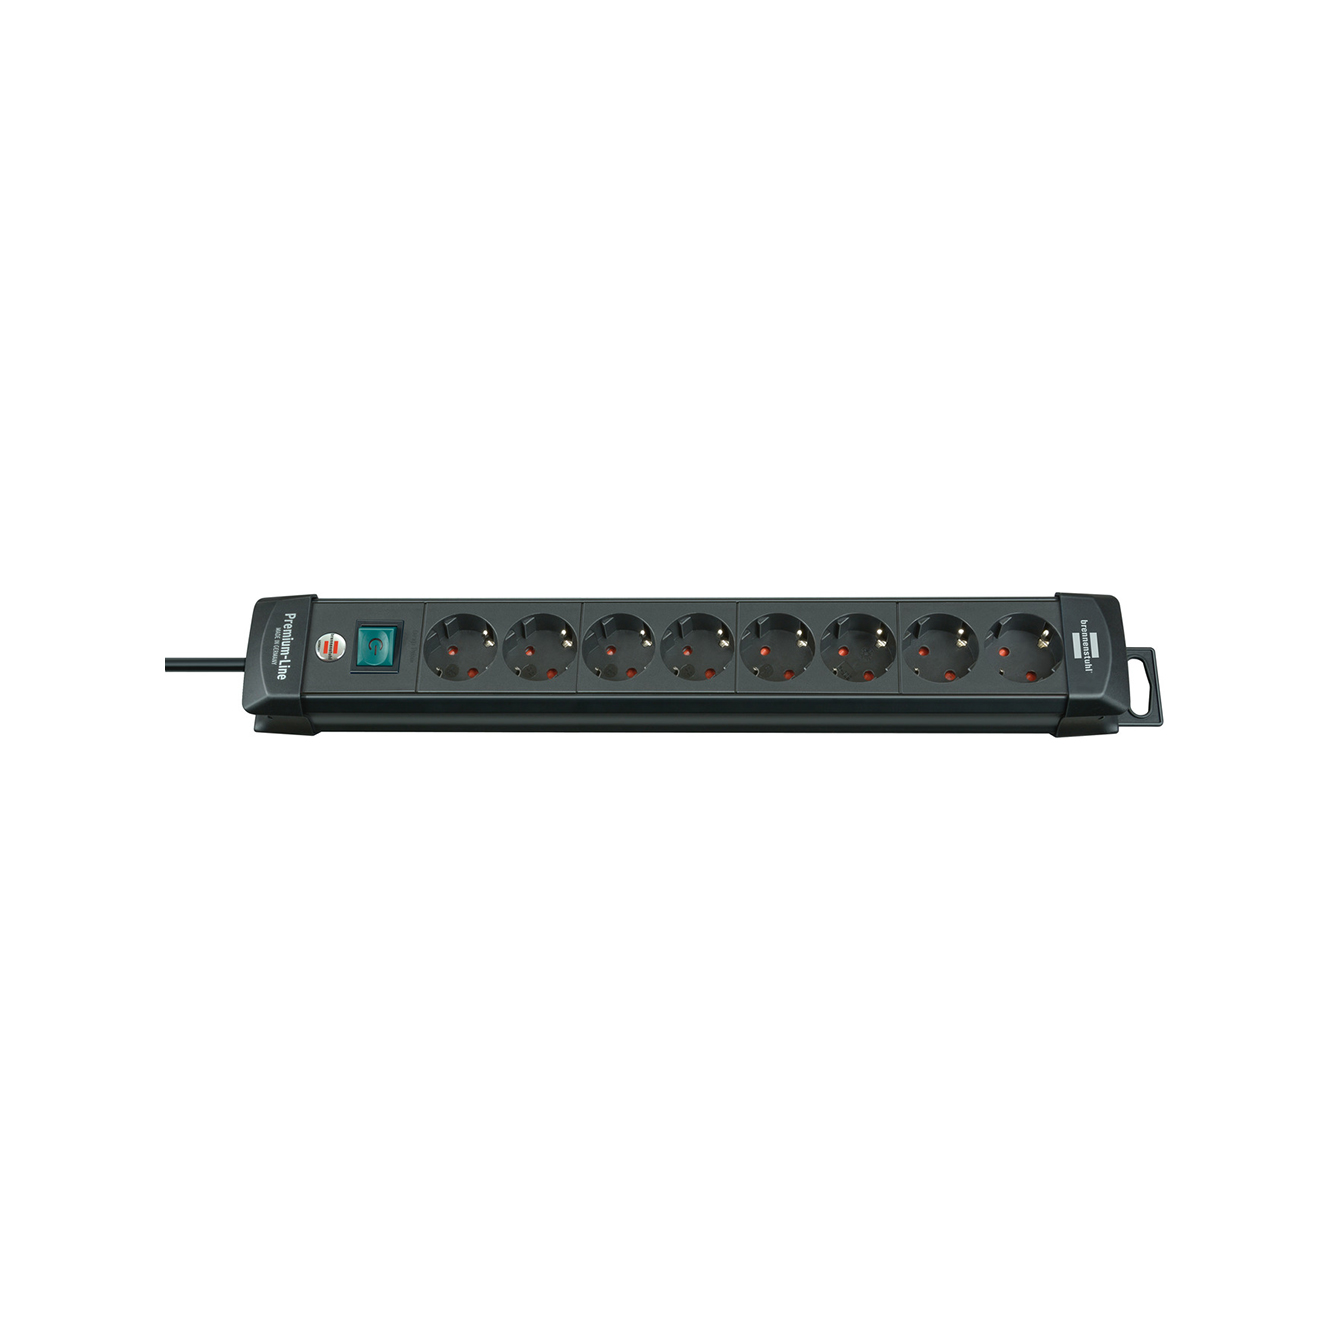 Удлинитель Brennenstuhl Premium-Line 8 розеток кабель 3 м H05VV-F 3G1,5 черный 1951180100